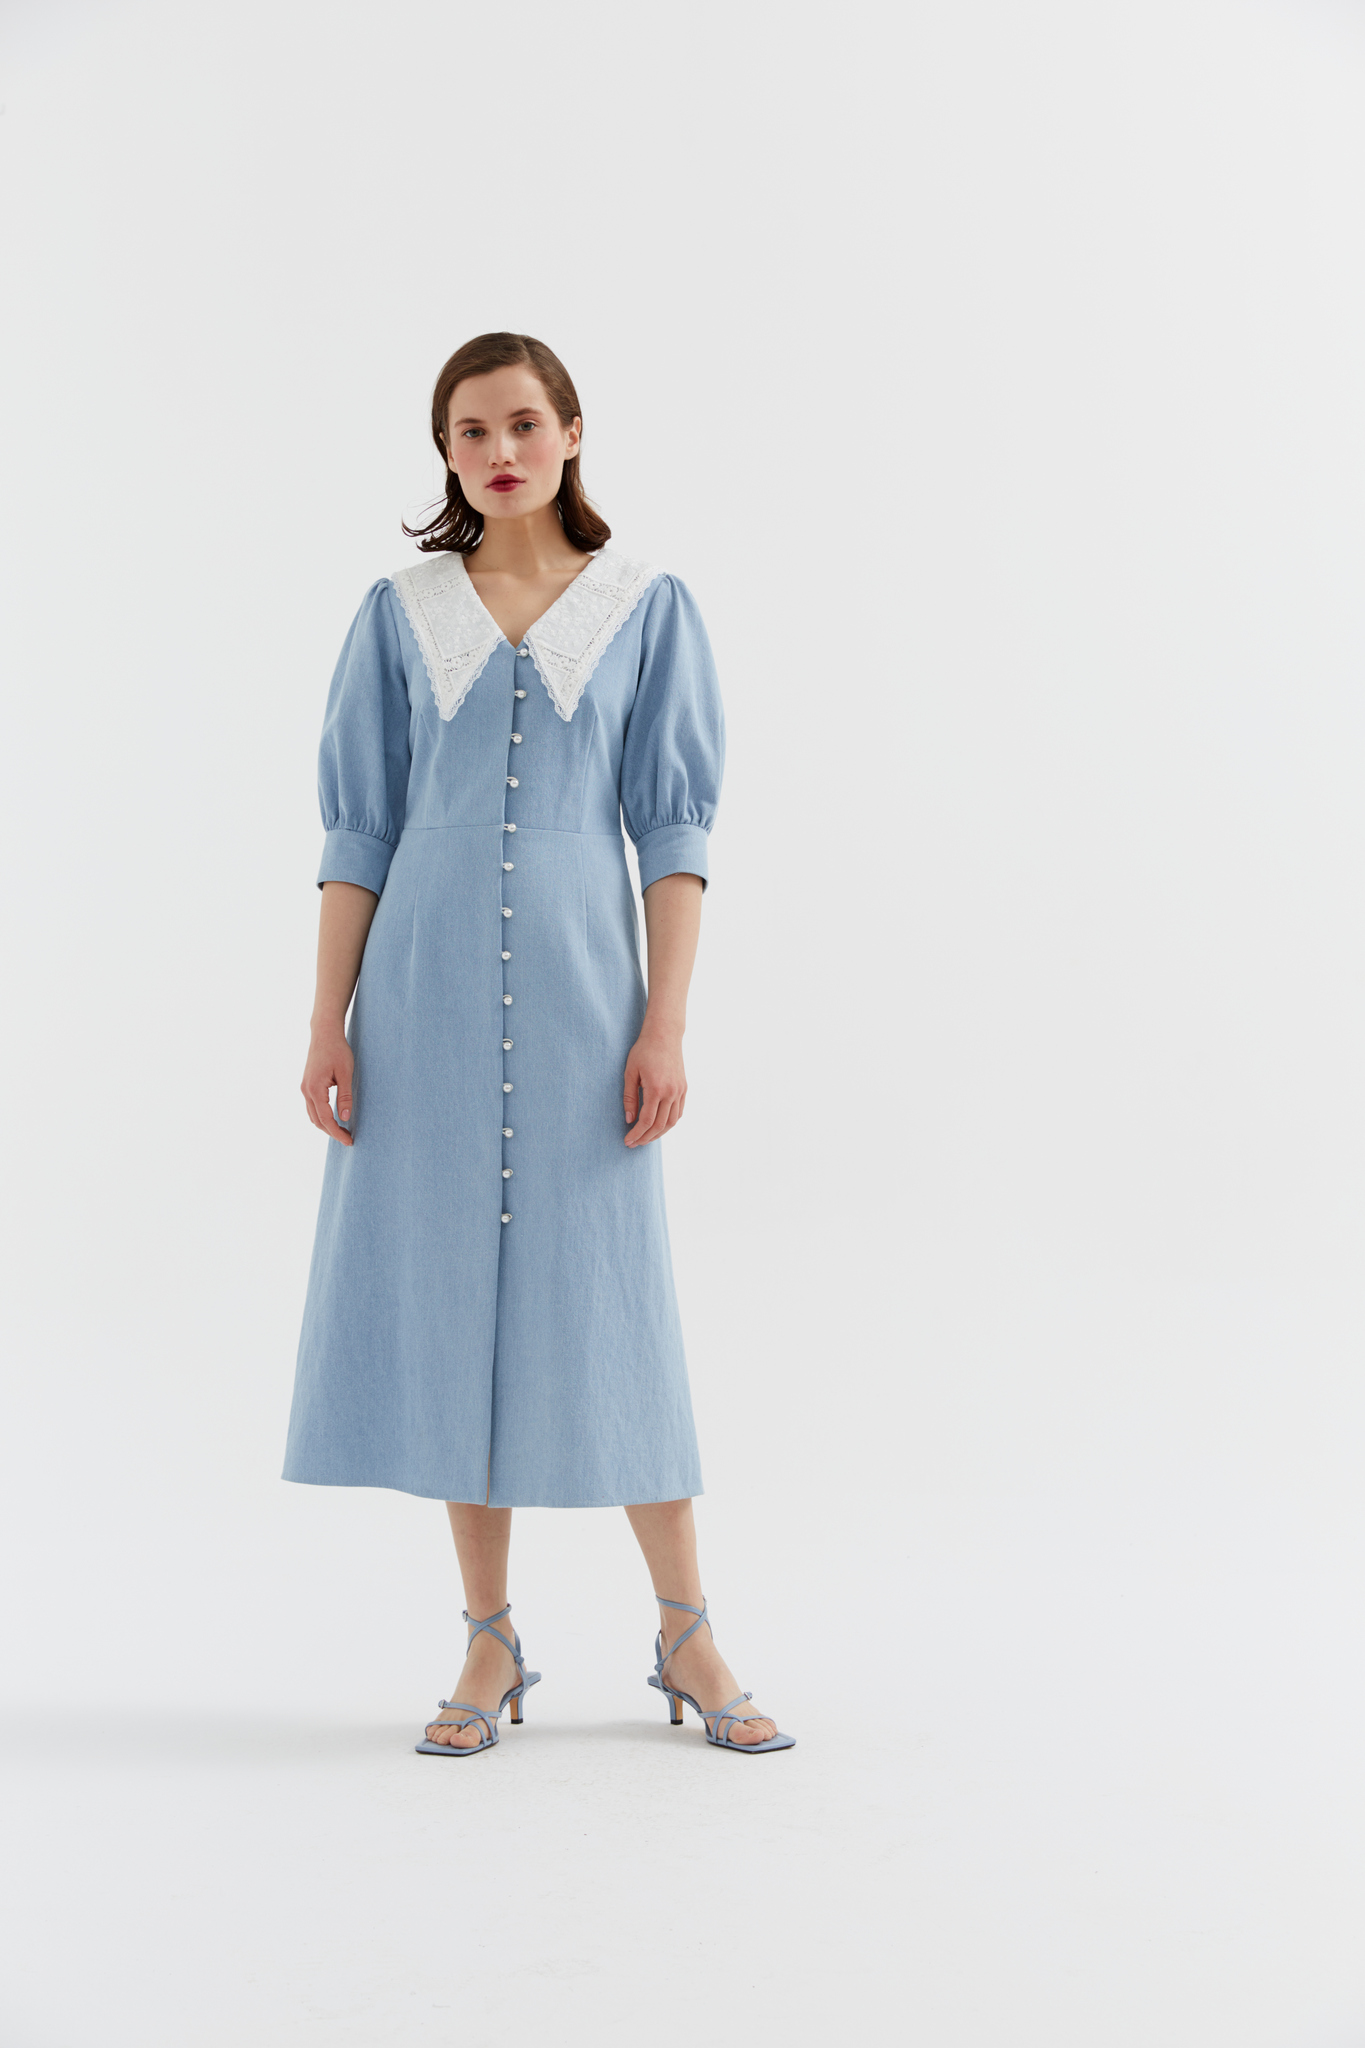 Платье-халат — самая удобная модель на лето: 10 вариантов, которые подойдут для любого типа фигуры